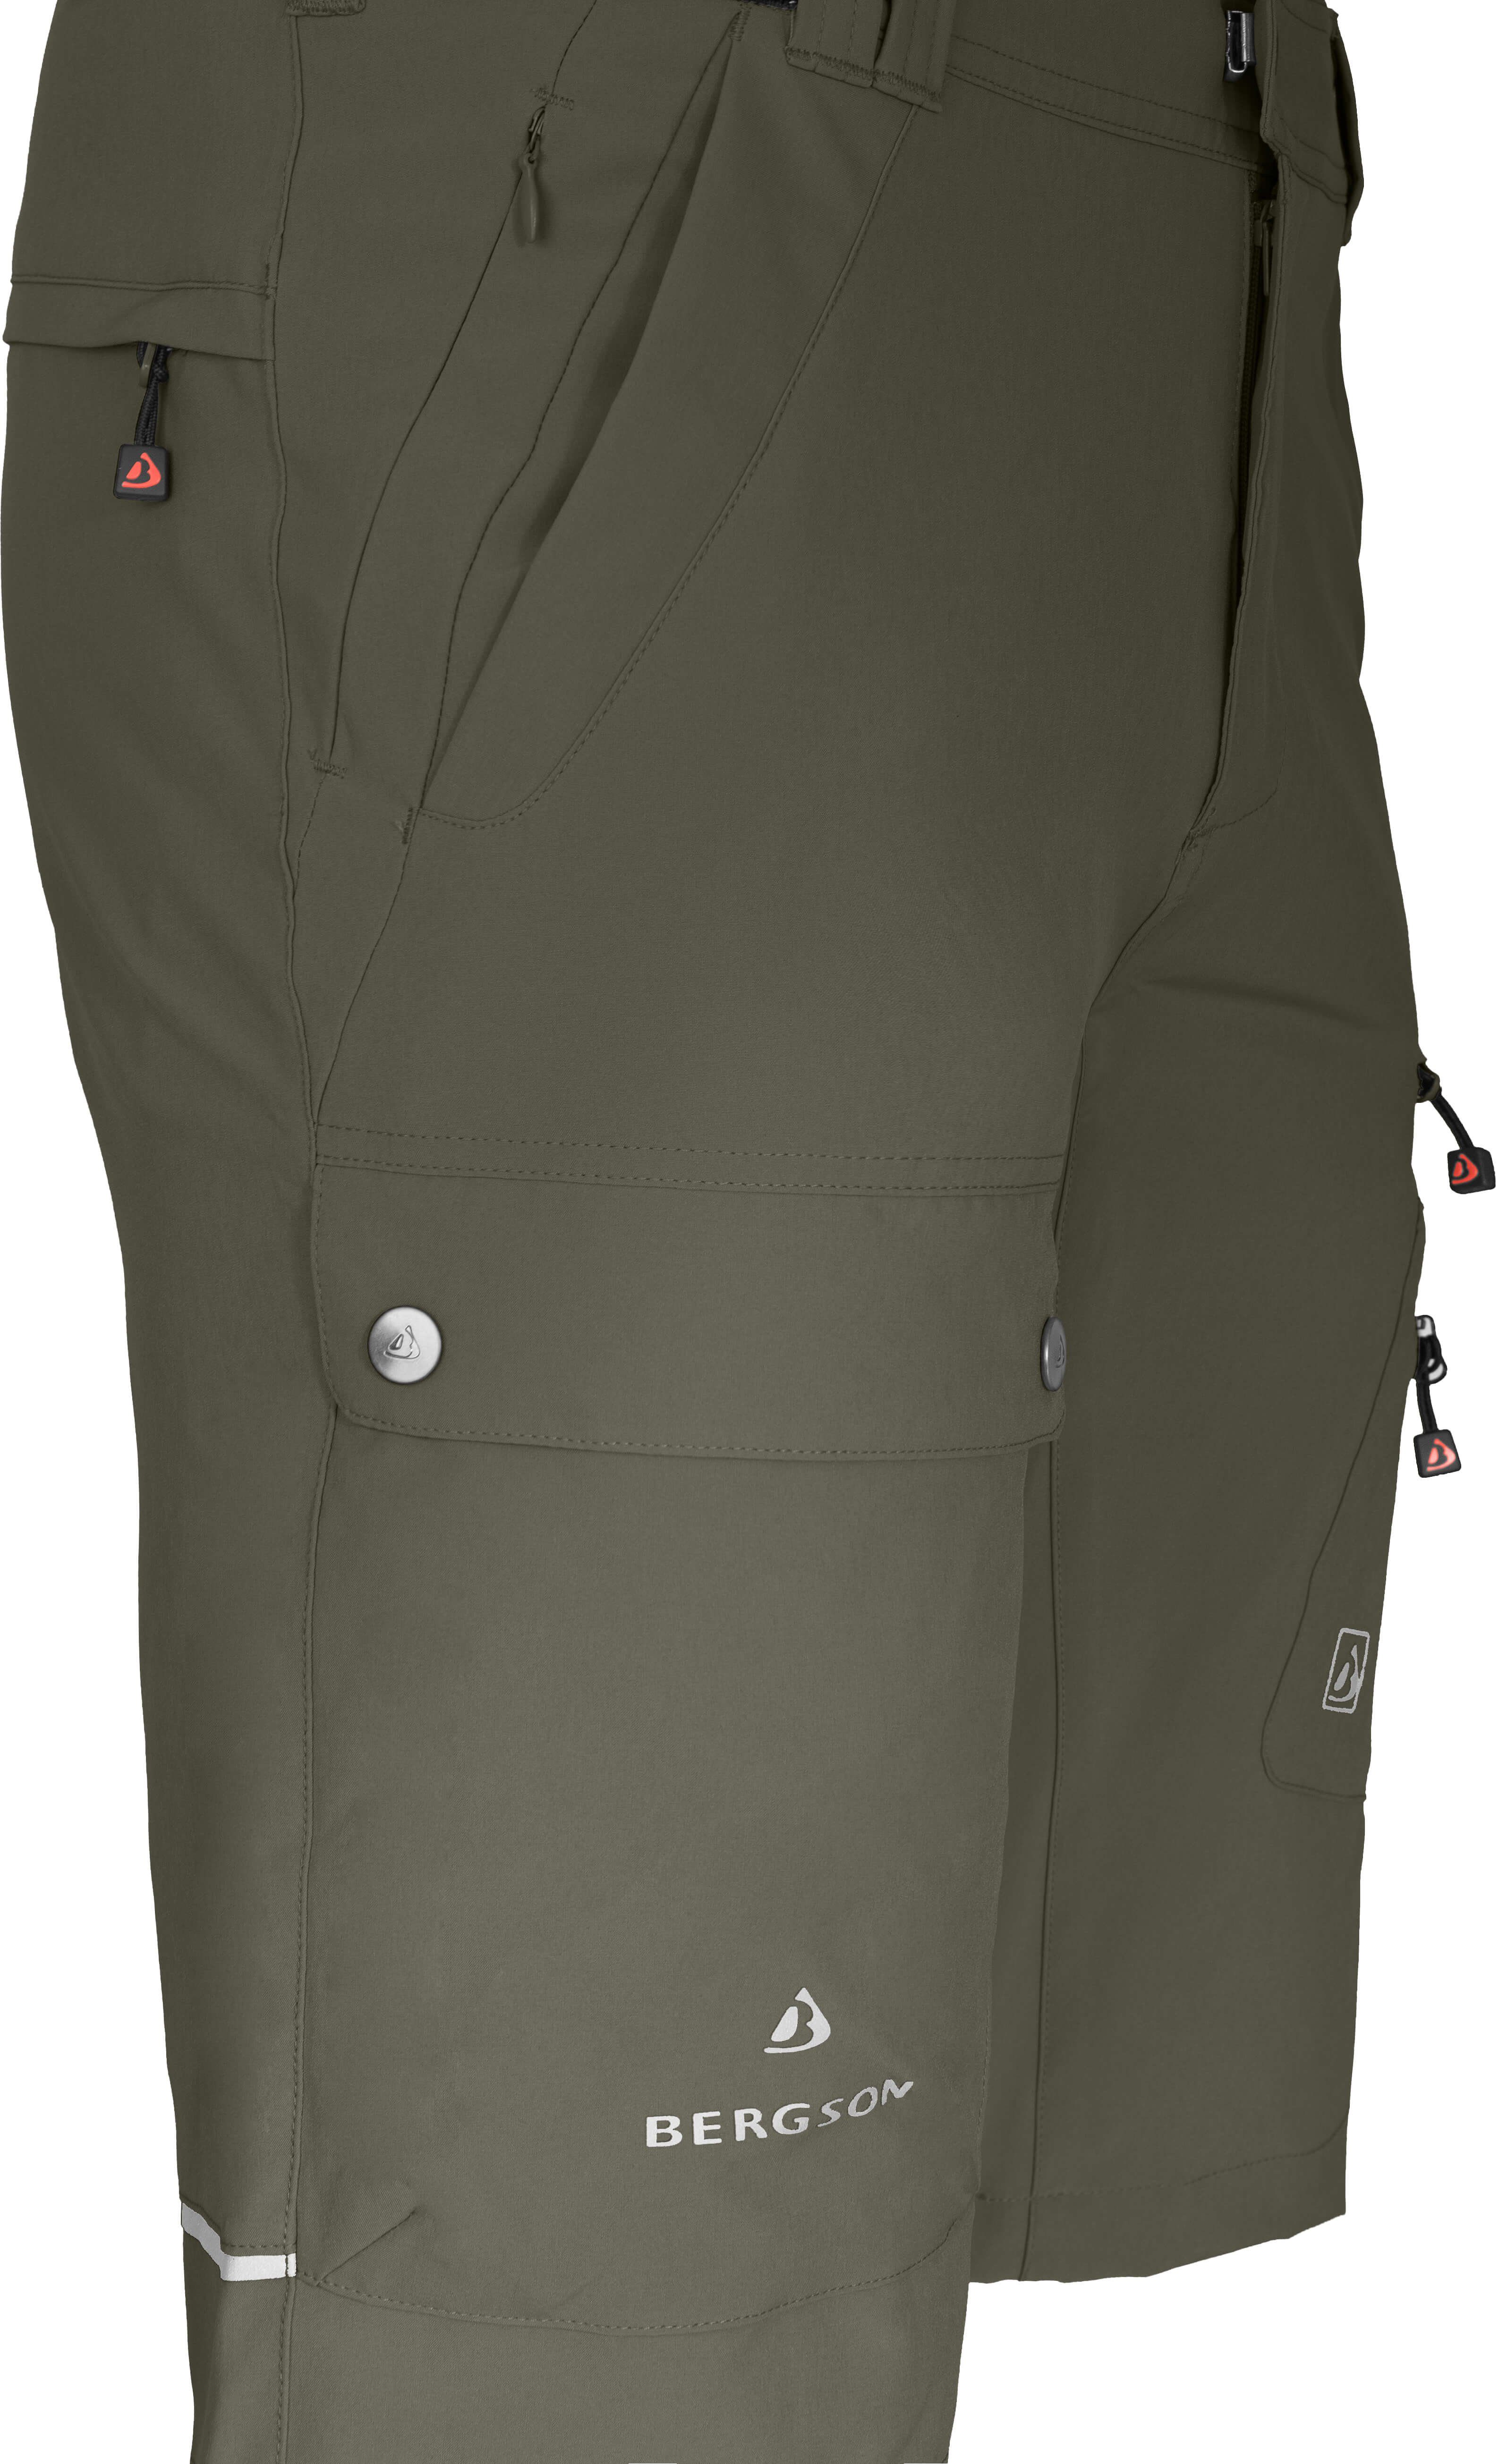 Bergson Outdoorhose FROSLEV recycelt, COMFORT Wandershorts, Normalgrößen, Bermuda Herren Taschen, 8 elastisch, grau/grün